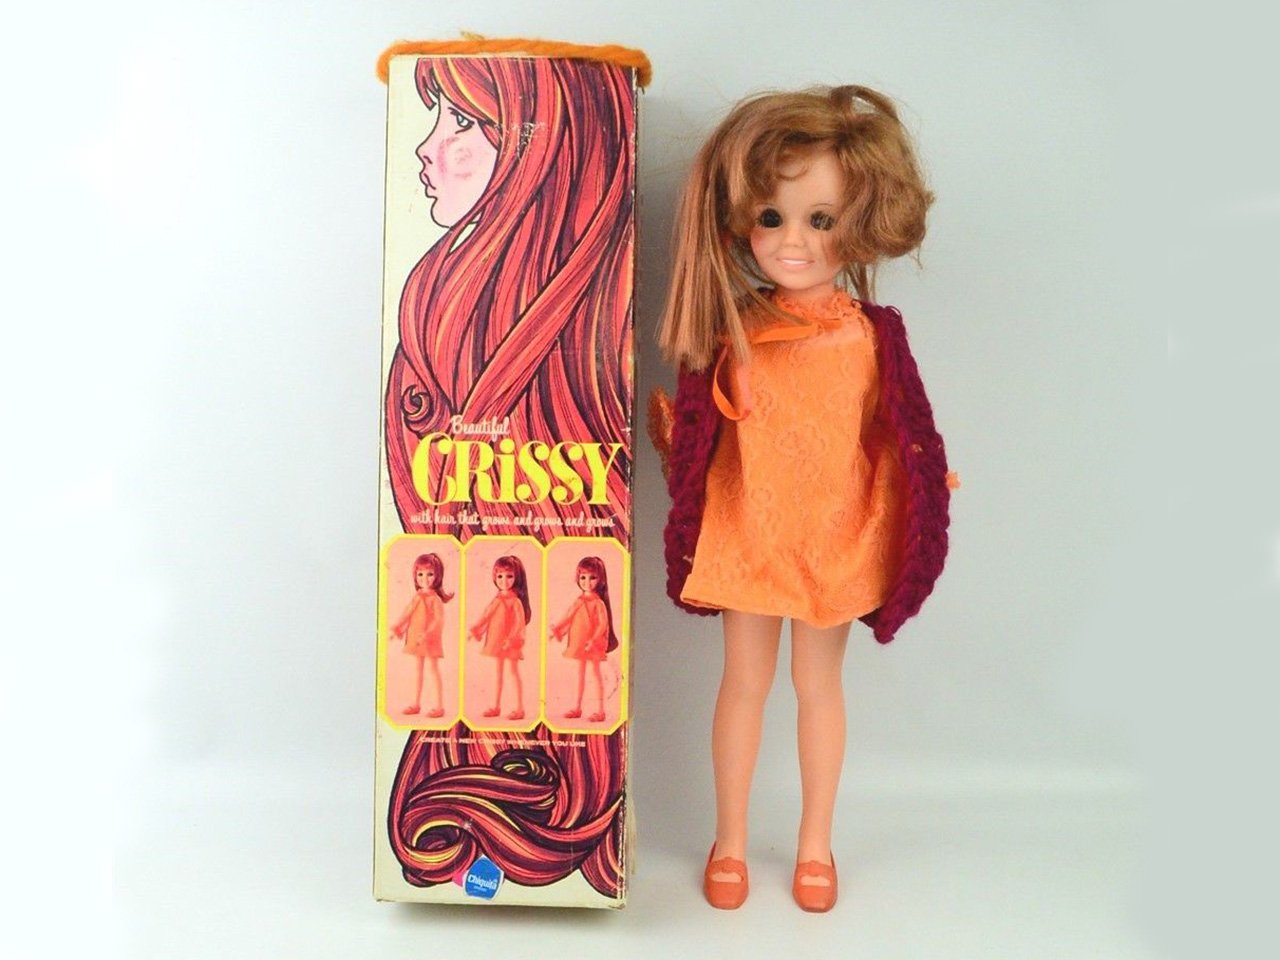 Crissy doll